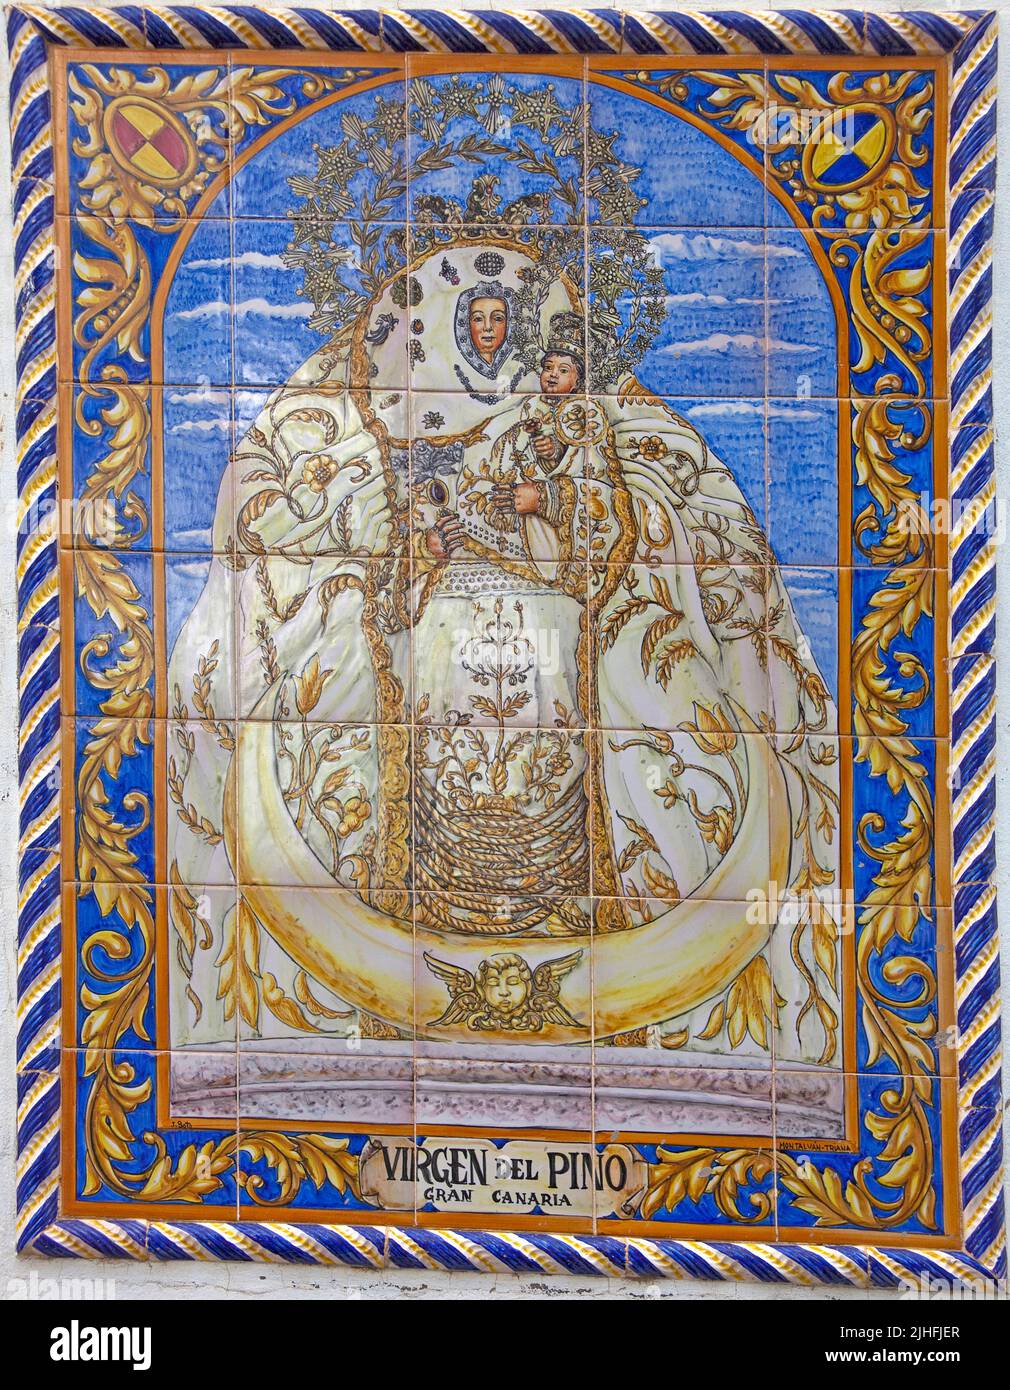 La Vierge del Pino sur un carreau de céramique, Saint patron de Teror, Grand Canary, îles Canaries, Espagne, Europe Banque D'Images